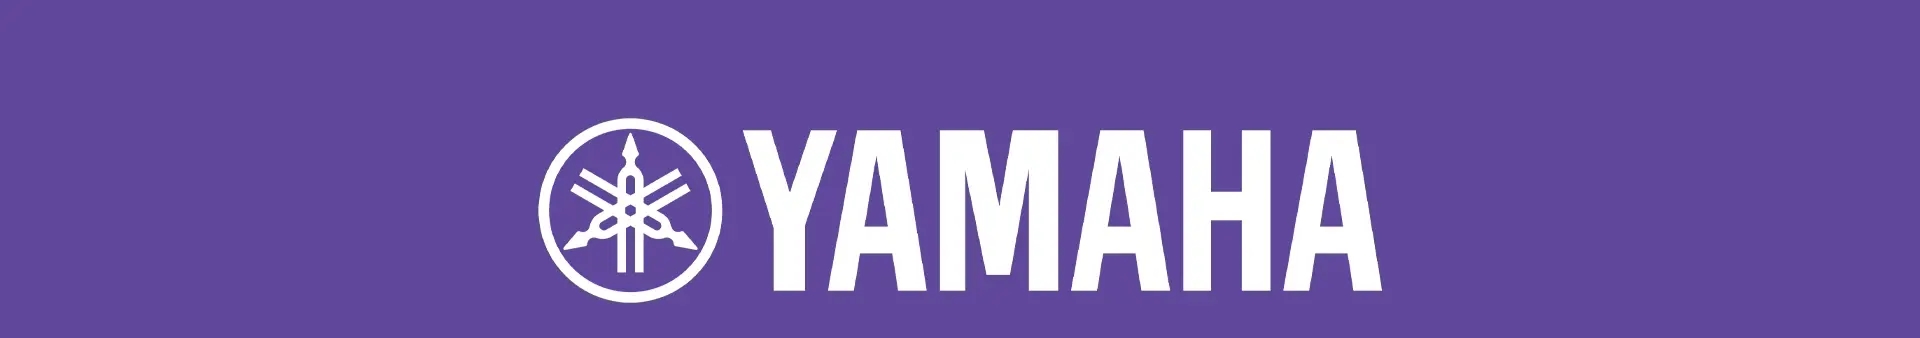 yamaha brand baner